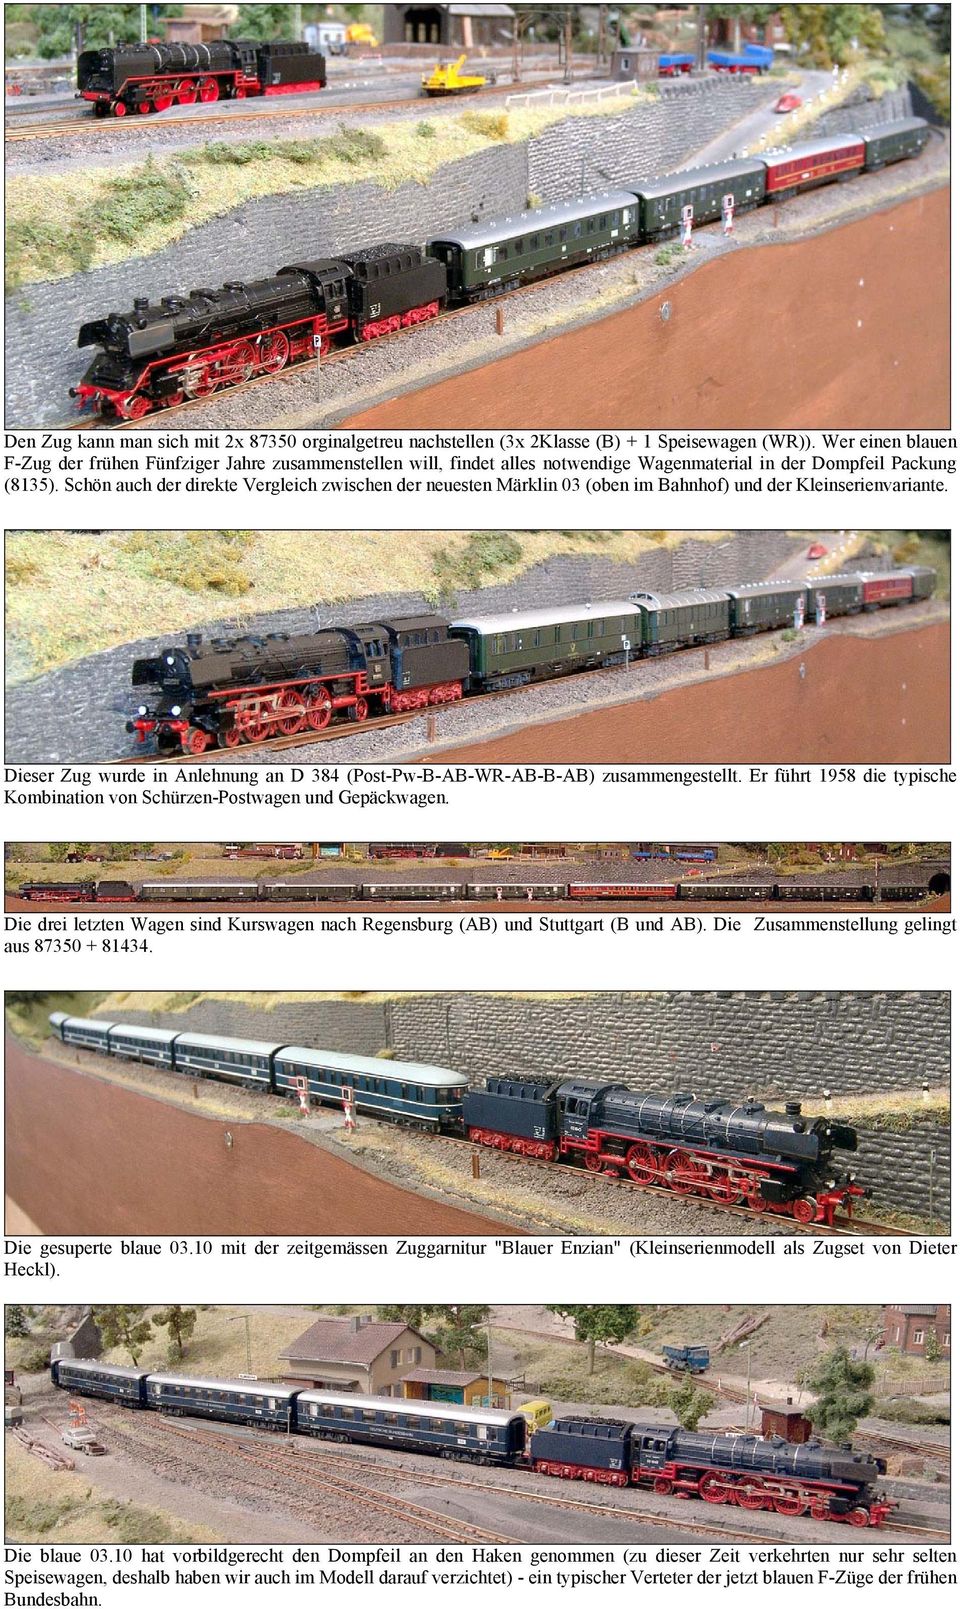 Schön auch der direkte Vergleich zwischen der neuesten Märklin 03 (oben im Bahnhof) und der Kleinserienvariante. Dieser Zug wurde in Anlehnung an D 384 (Post-Pw-B-AB-WR-AB-B-AB) zusammengestellt.